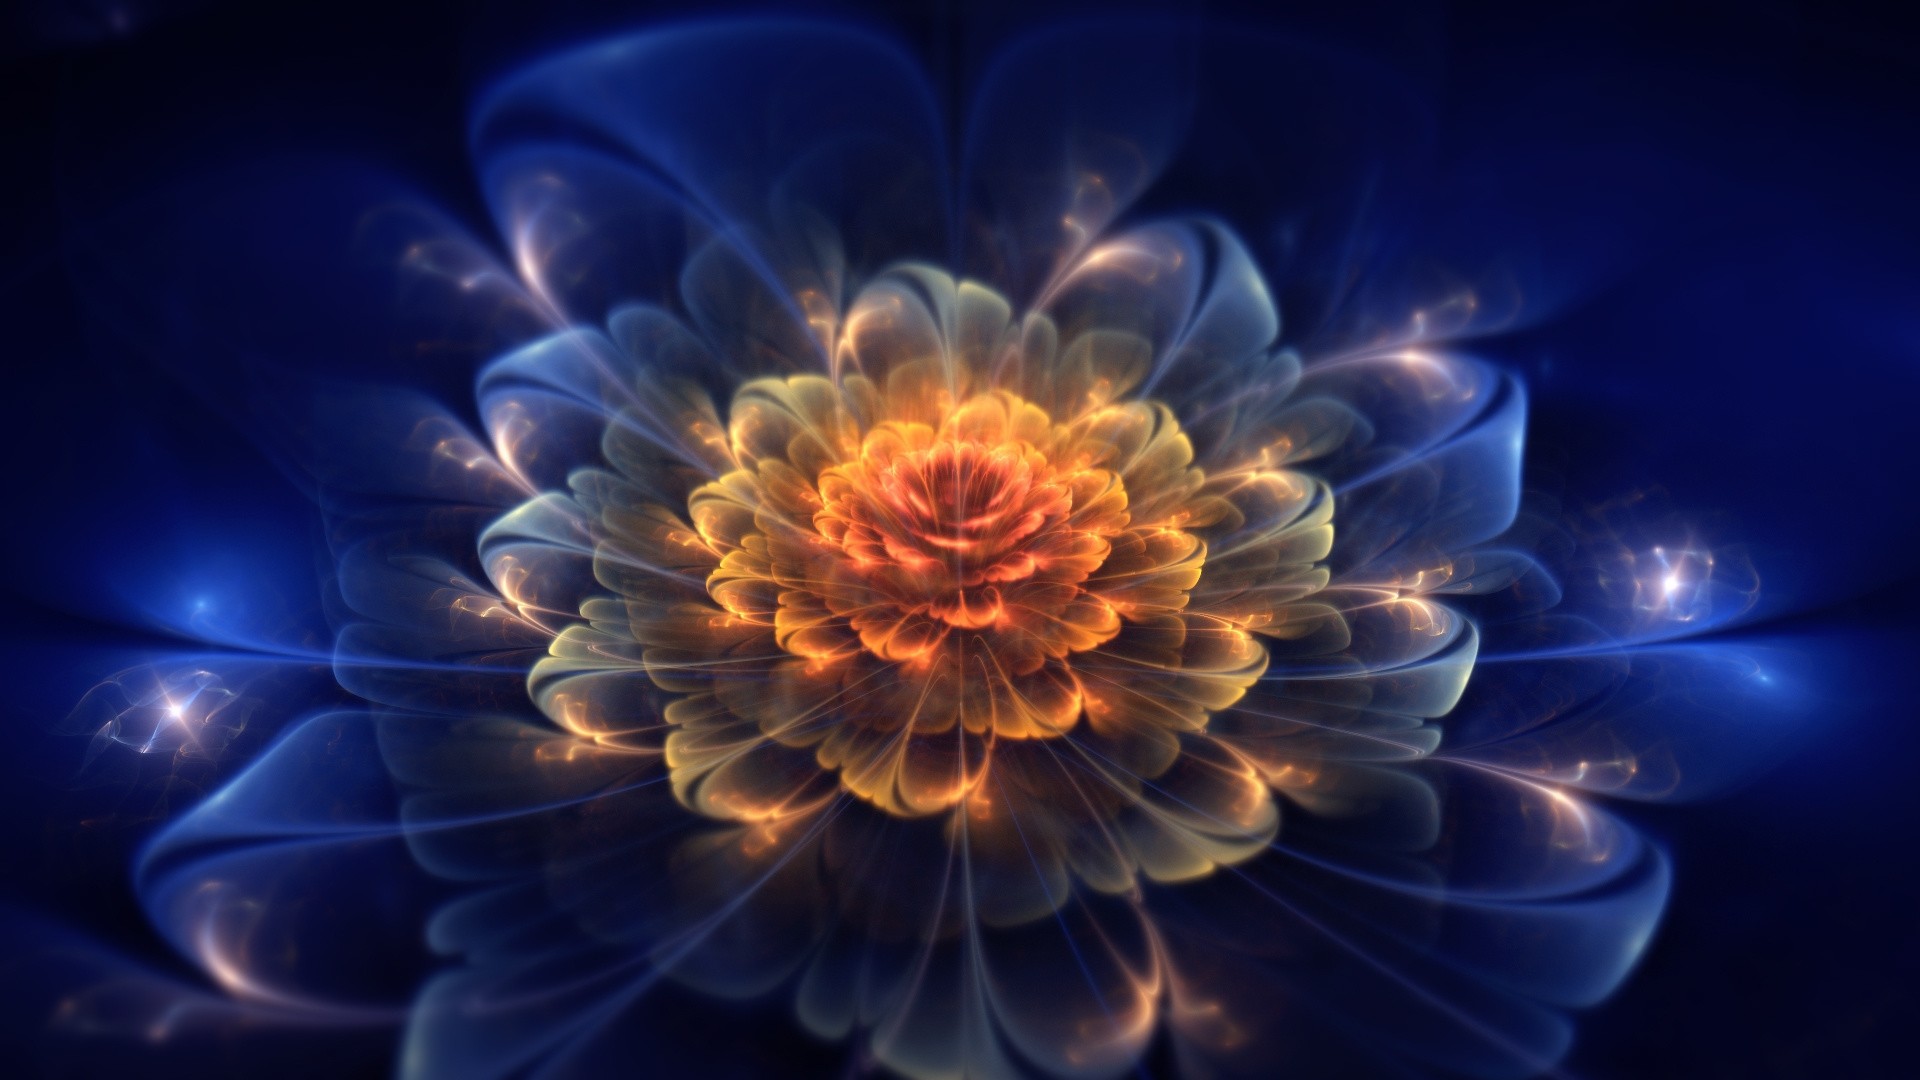 1920x1080 ... Background Full HD 1080p.  Wallpaper fractal, flower, light,  dark